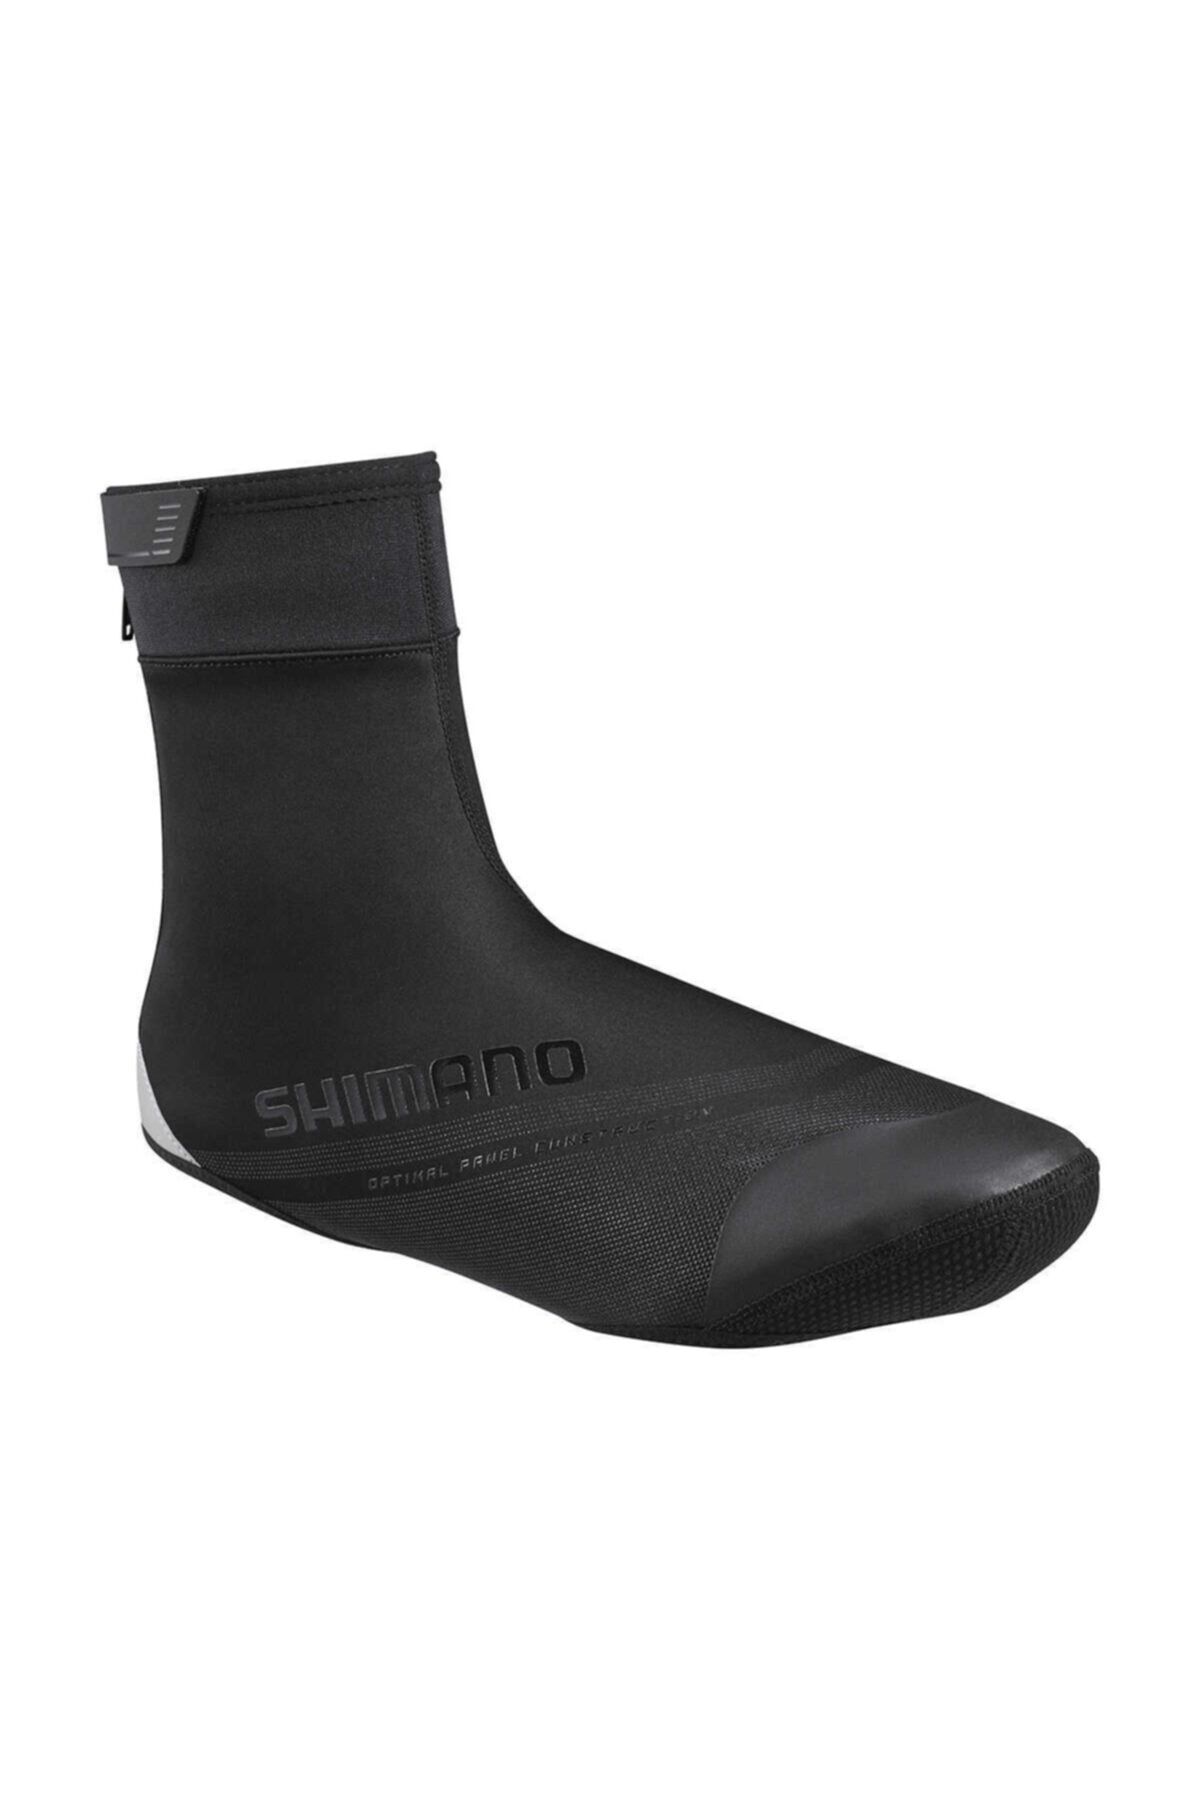 shimano Shımano S1100r Yol Ayakkabı Kılıfı Siyah Xl